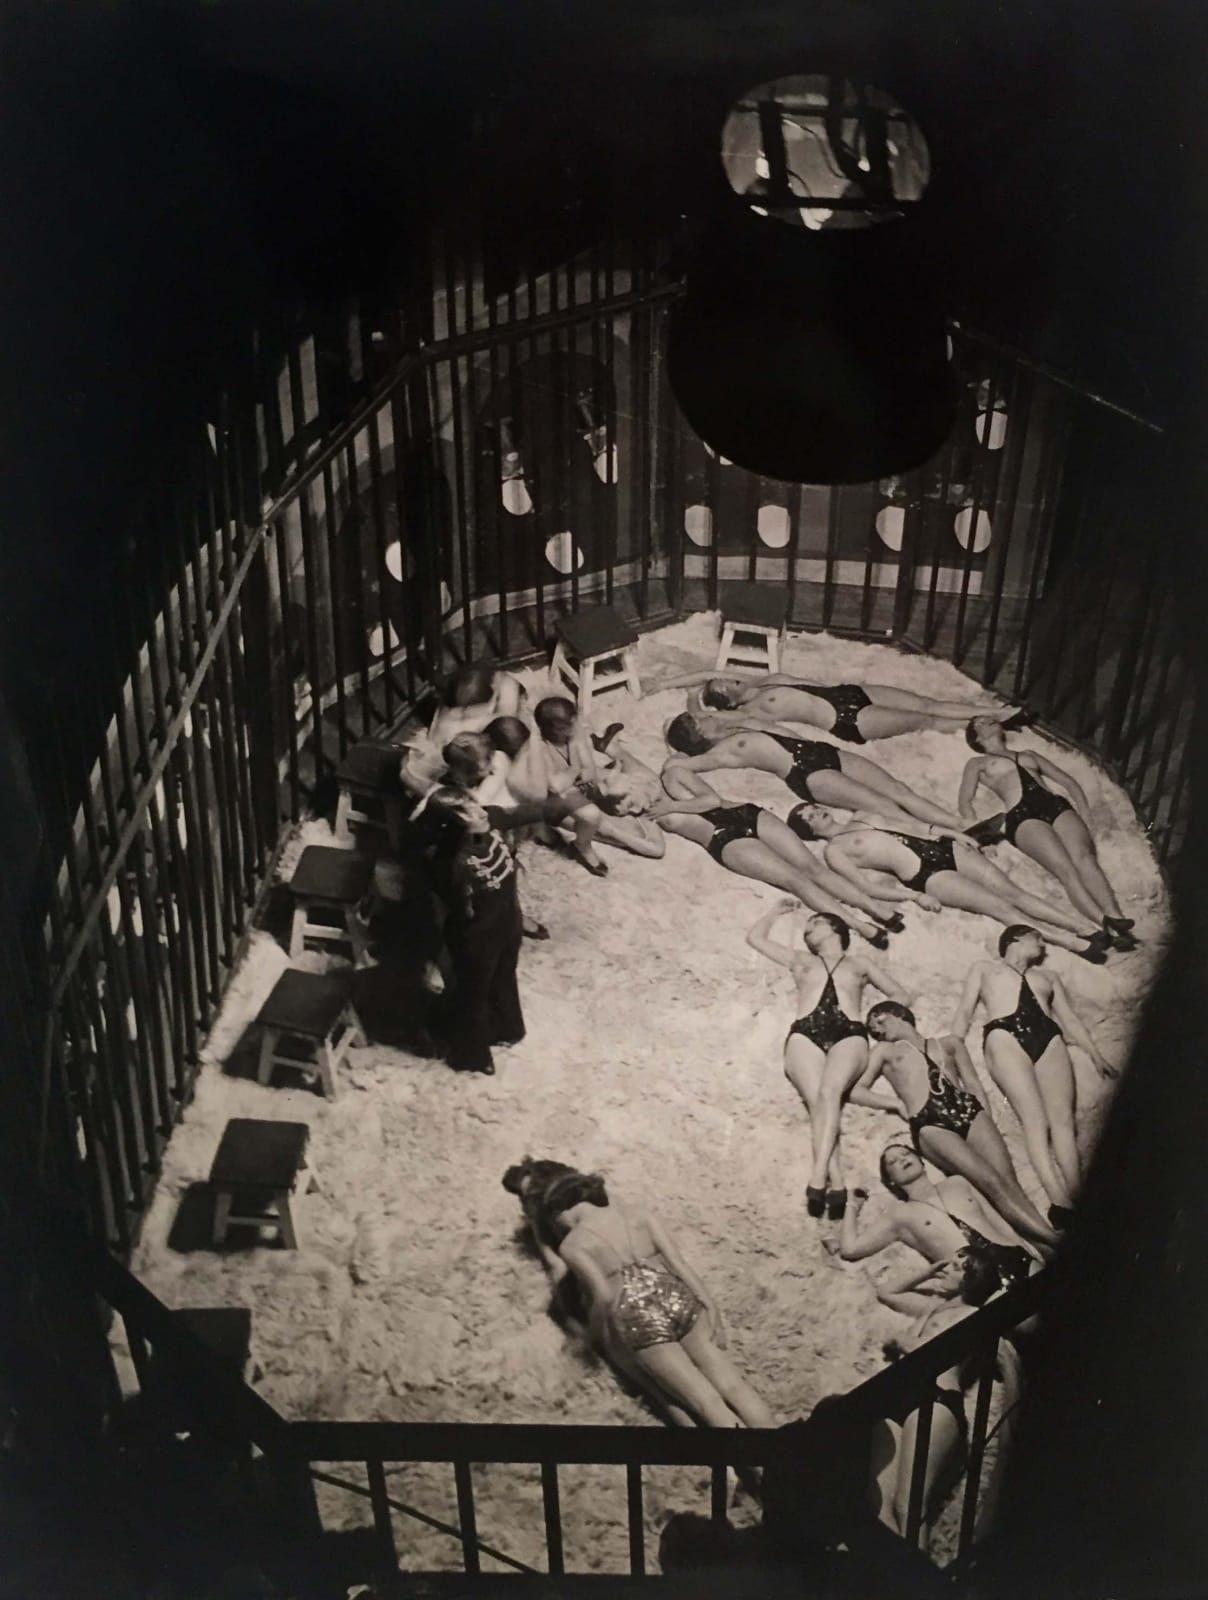 Brassaï, Cage of Wild Beasts, 1932